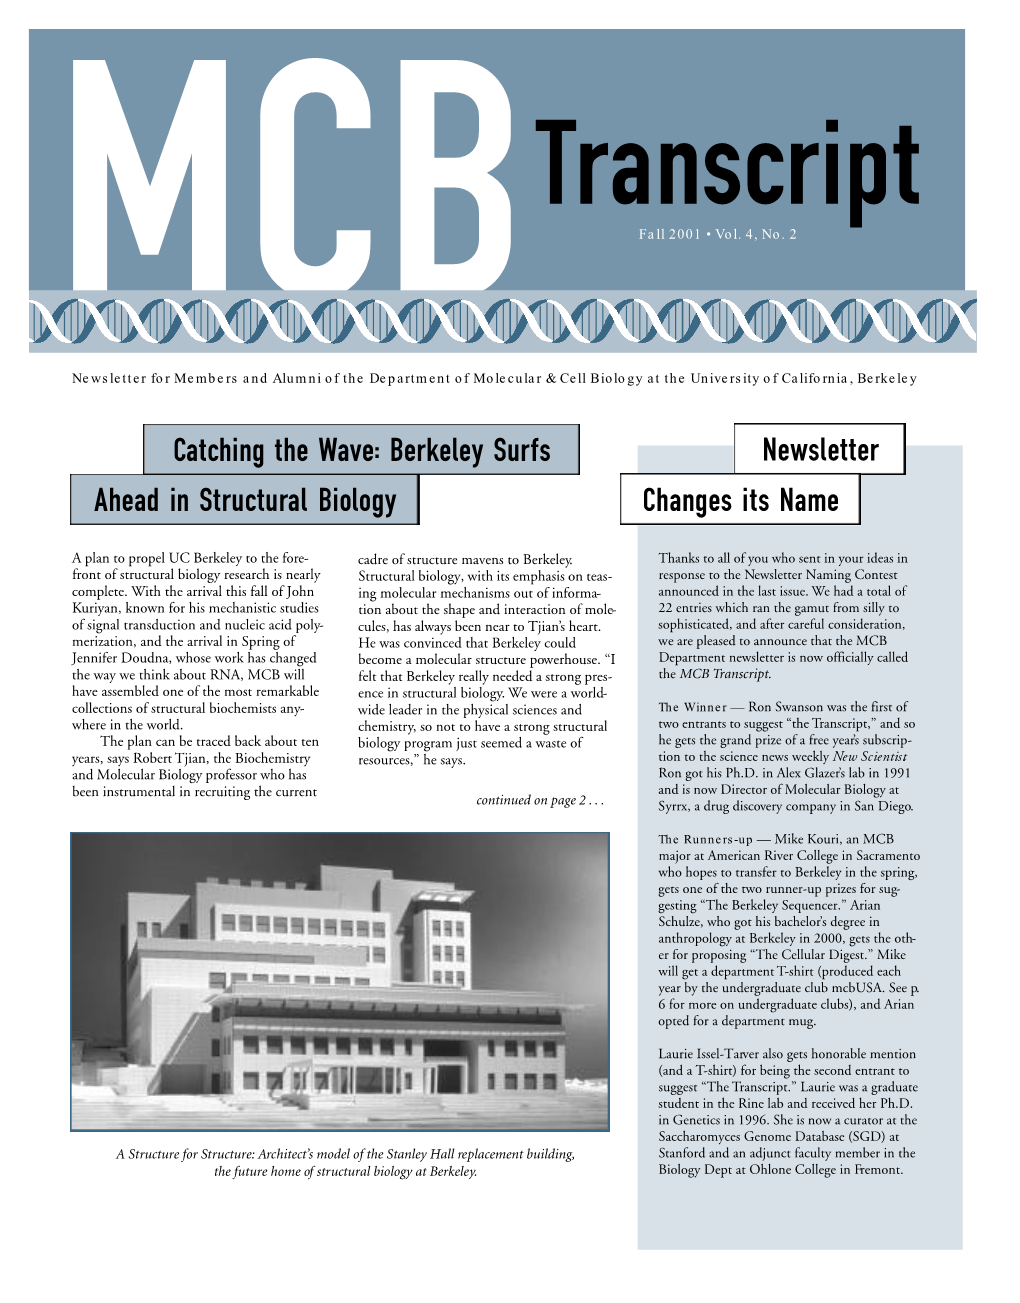 Fall 2001 MCB Transcript